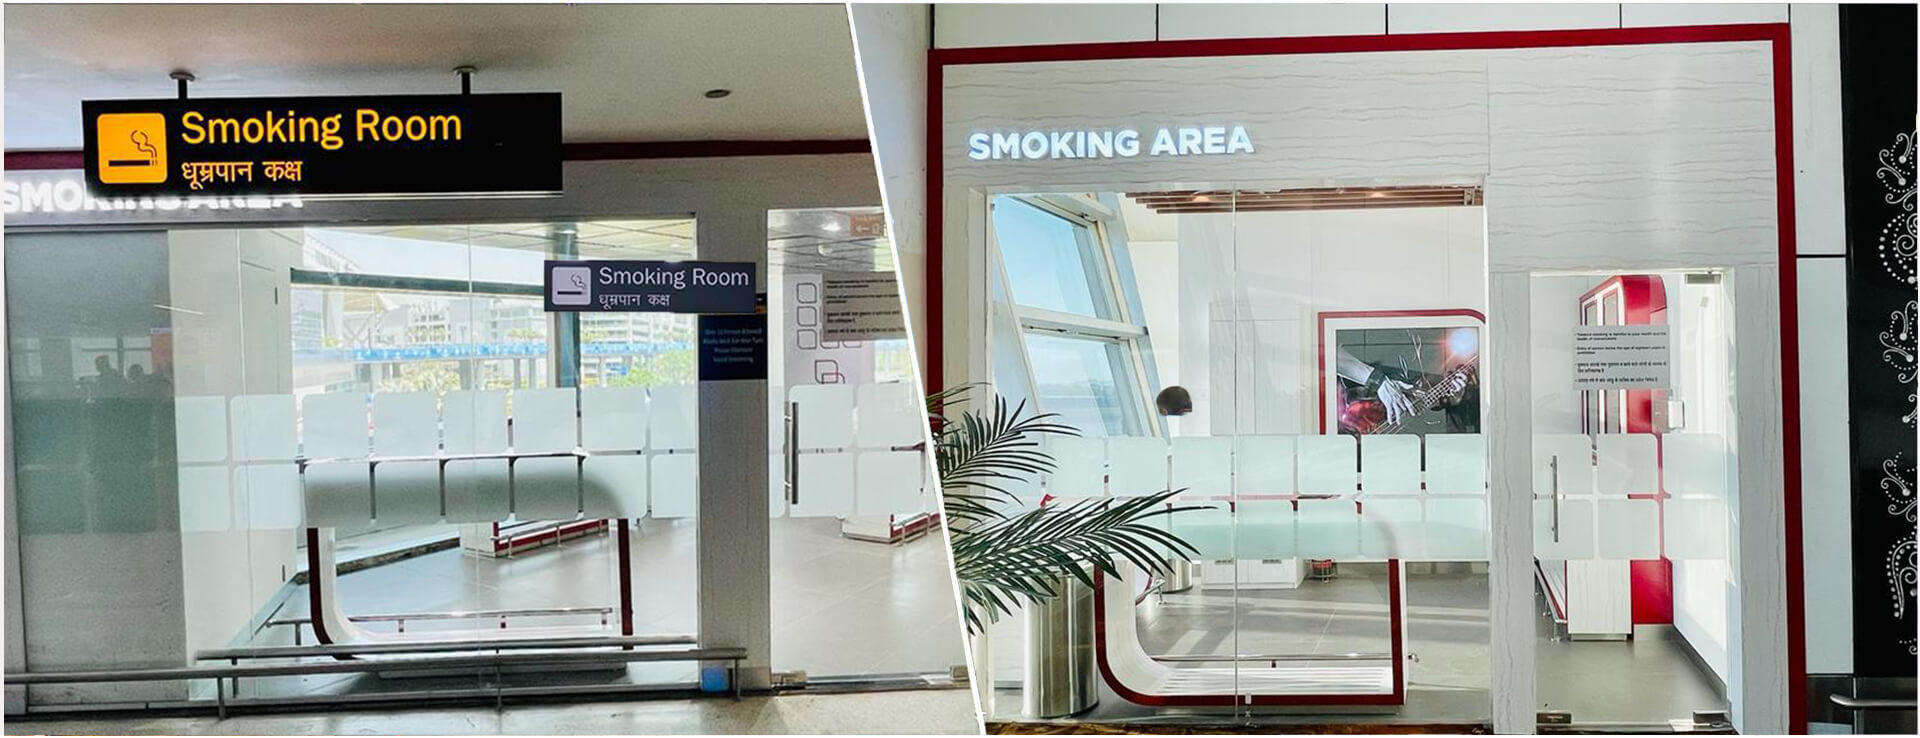 Smoking Zone at Delhi Airport